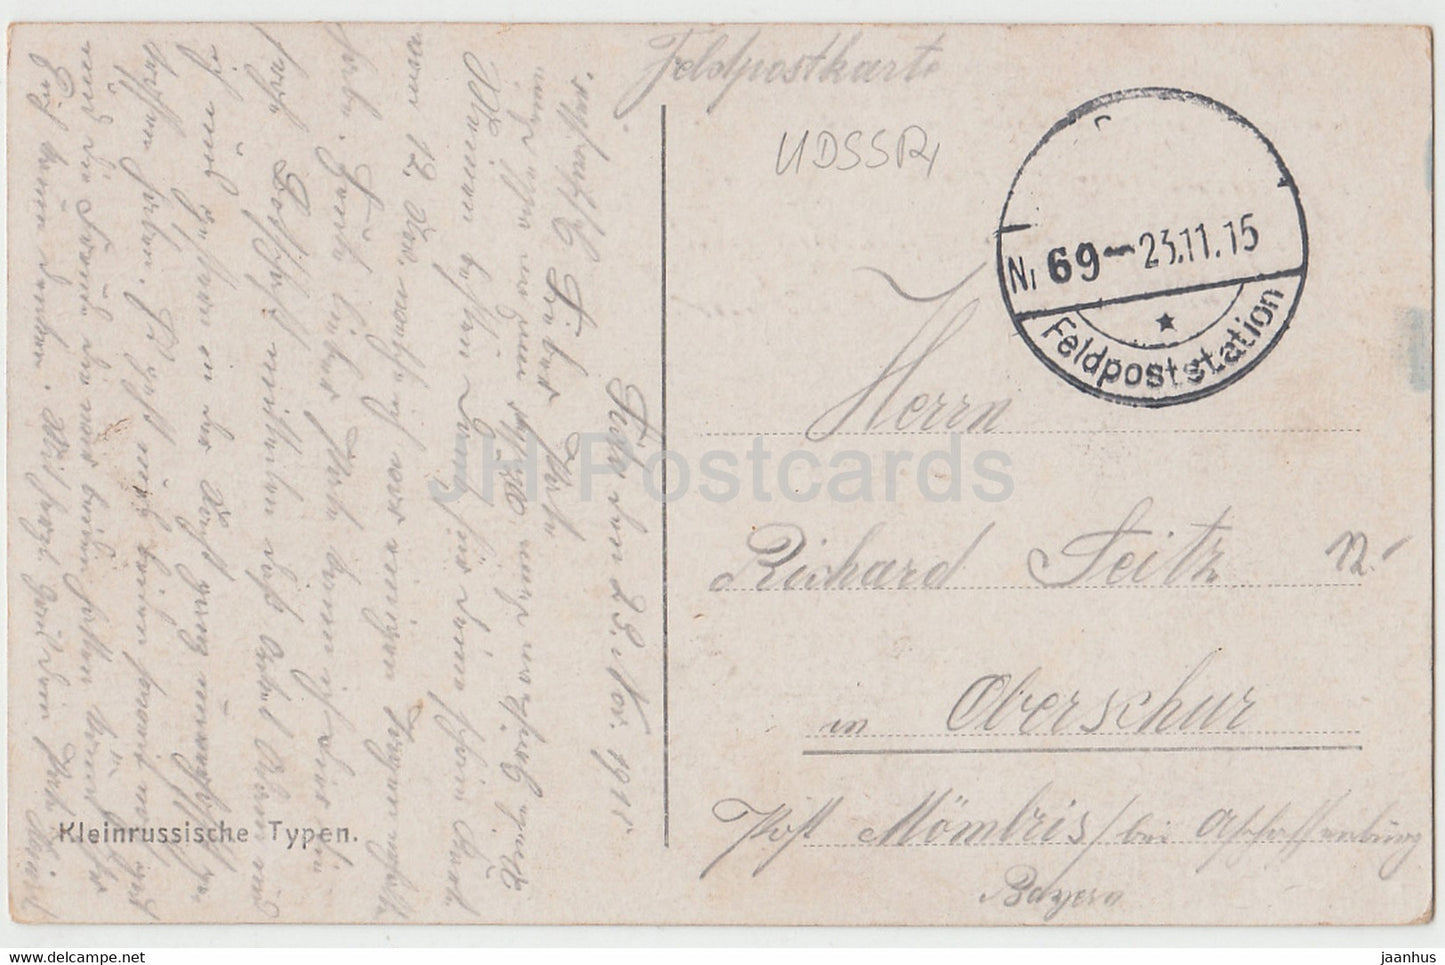 Kleinrussische Typen - Windmühle - Feldpost - alte Postkarte - 1915 - Ukraine - gebraucht